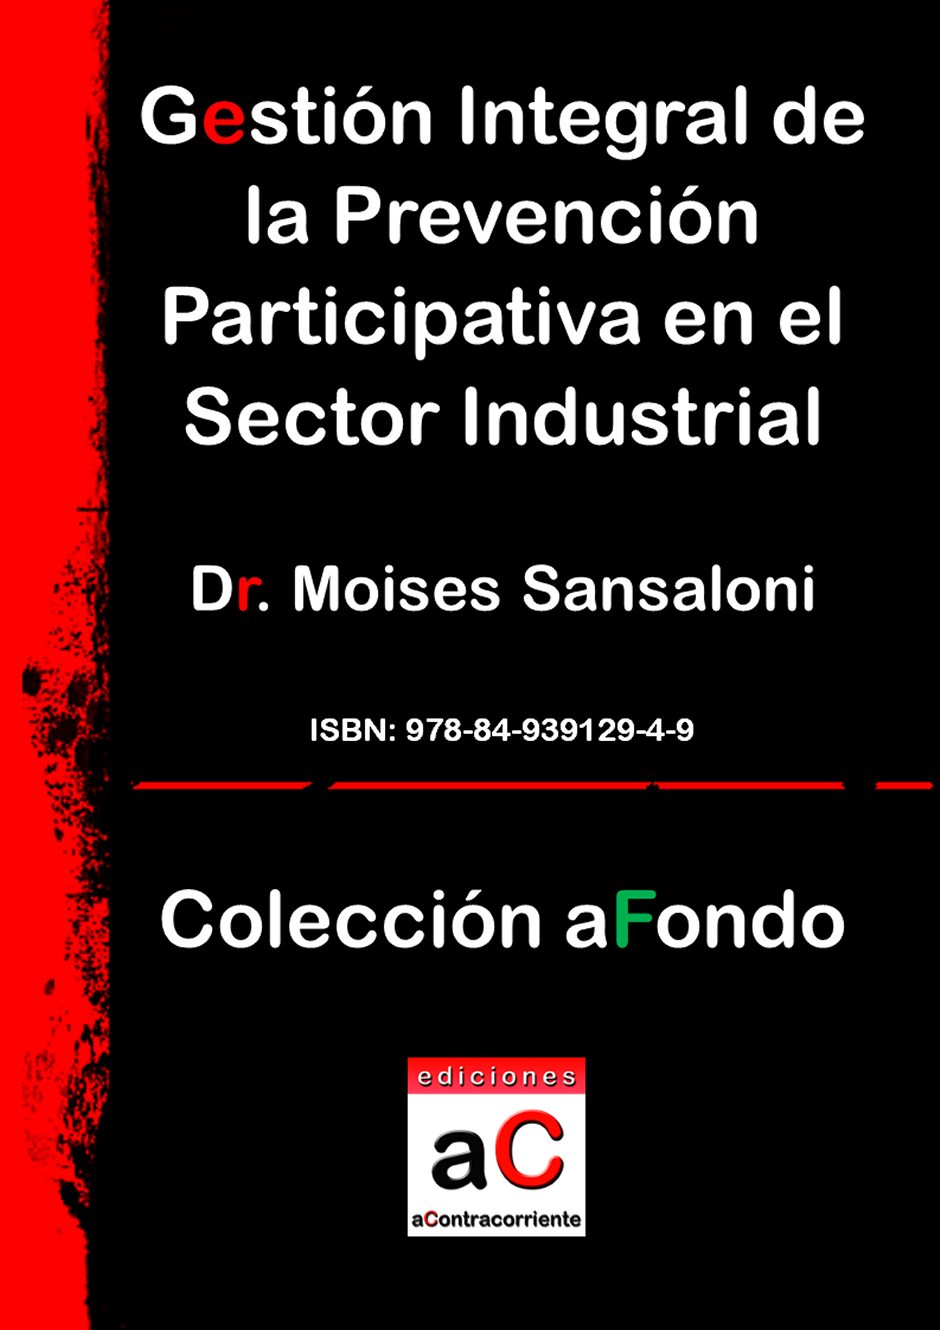 Gestin integral de la prevencin participativa en el sector industrial, Ediciones aContracorriente